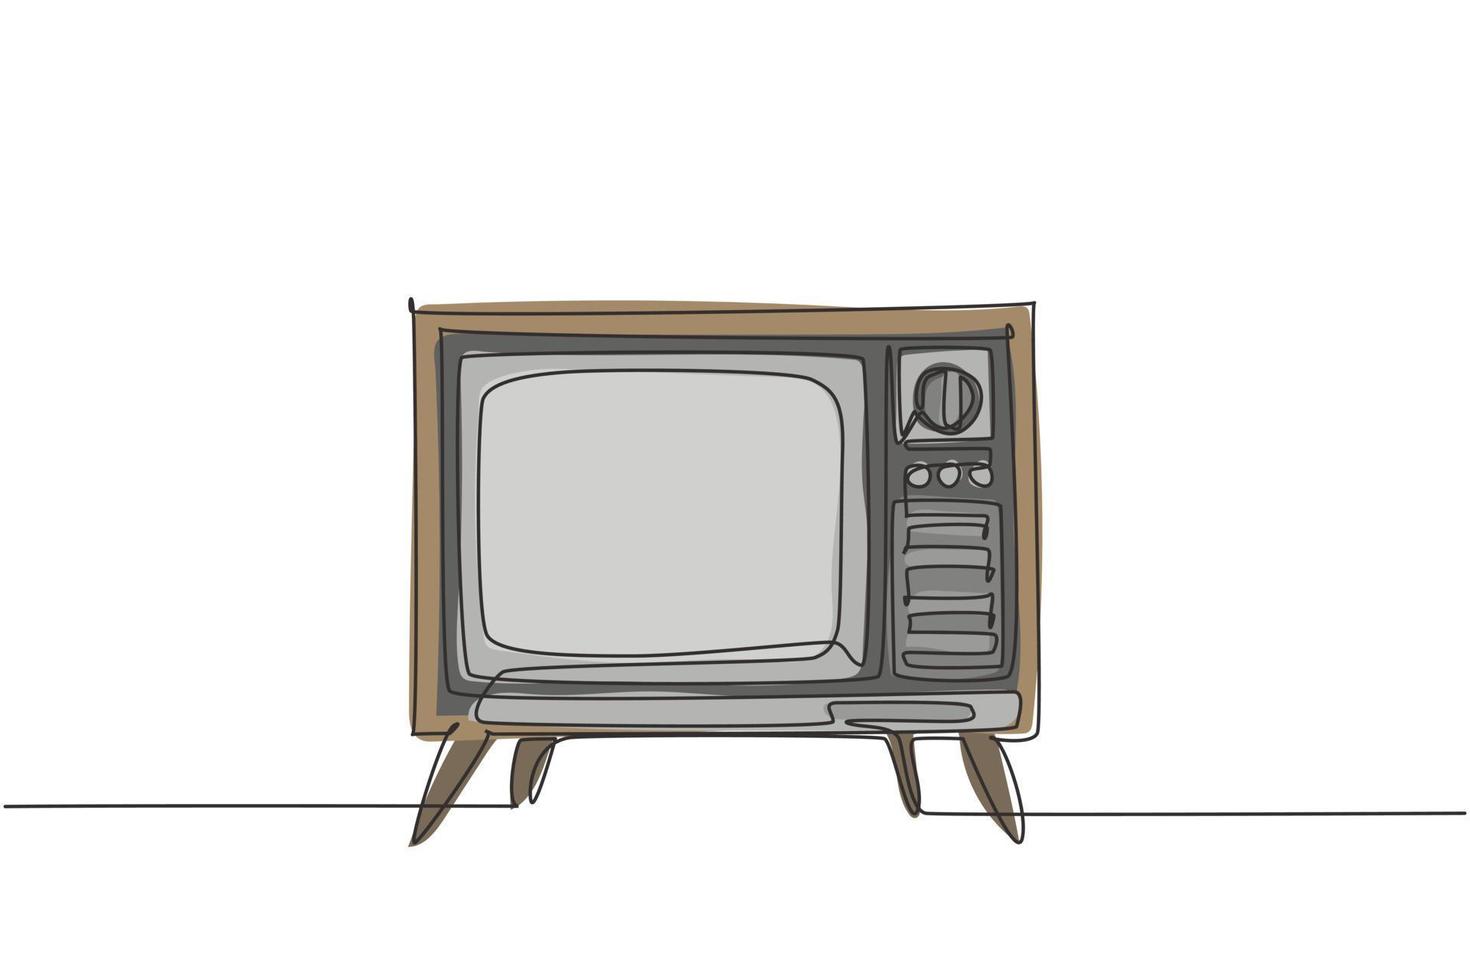 disegno a linea continua di una tv retrò vecchio stile con custodia e gamba in legno. antico concetto di televisione analogica vintage una linea di disegno grafico illustrazione vettoriale